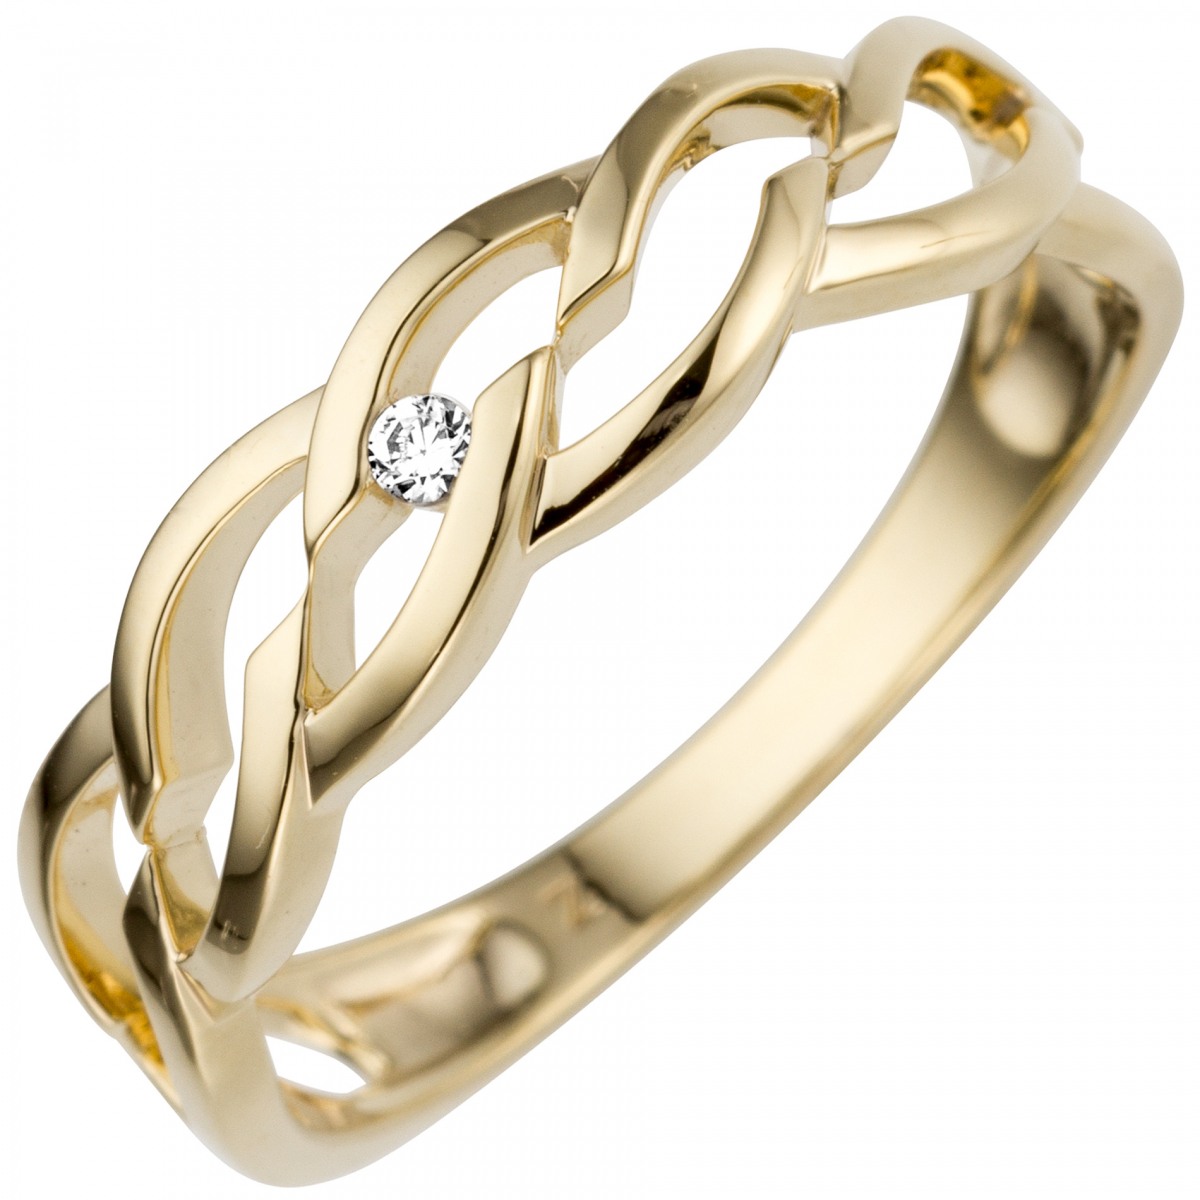 Damen Ring 585 Gold Gelbgold 1 Diamant Brillant 0,02ct. - 52mm